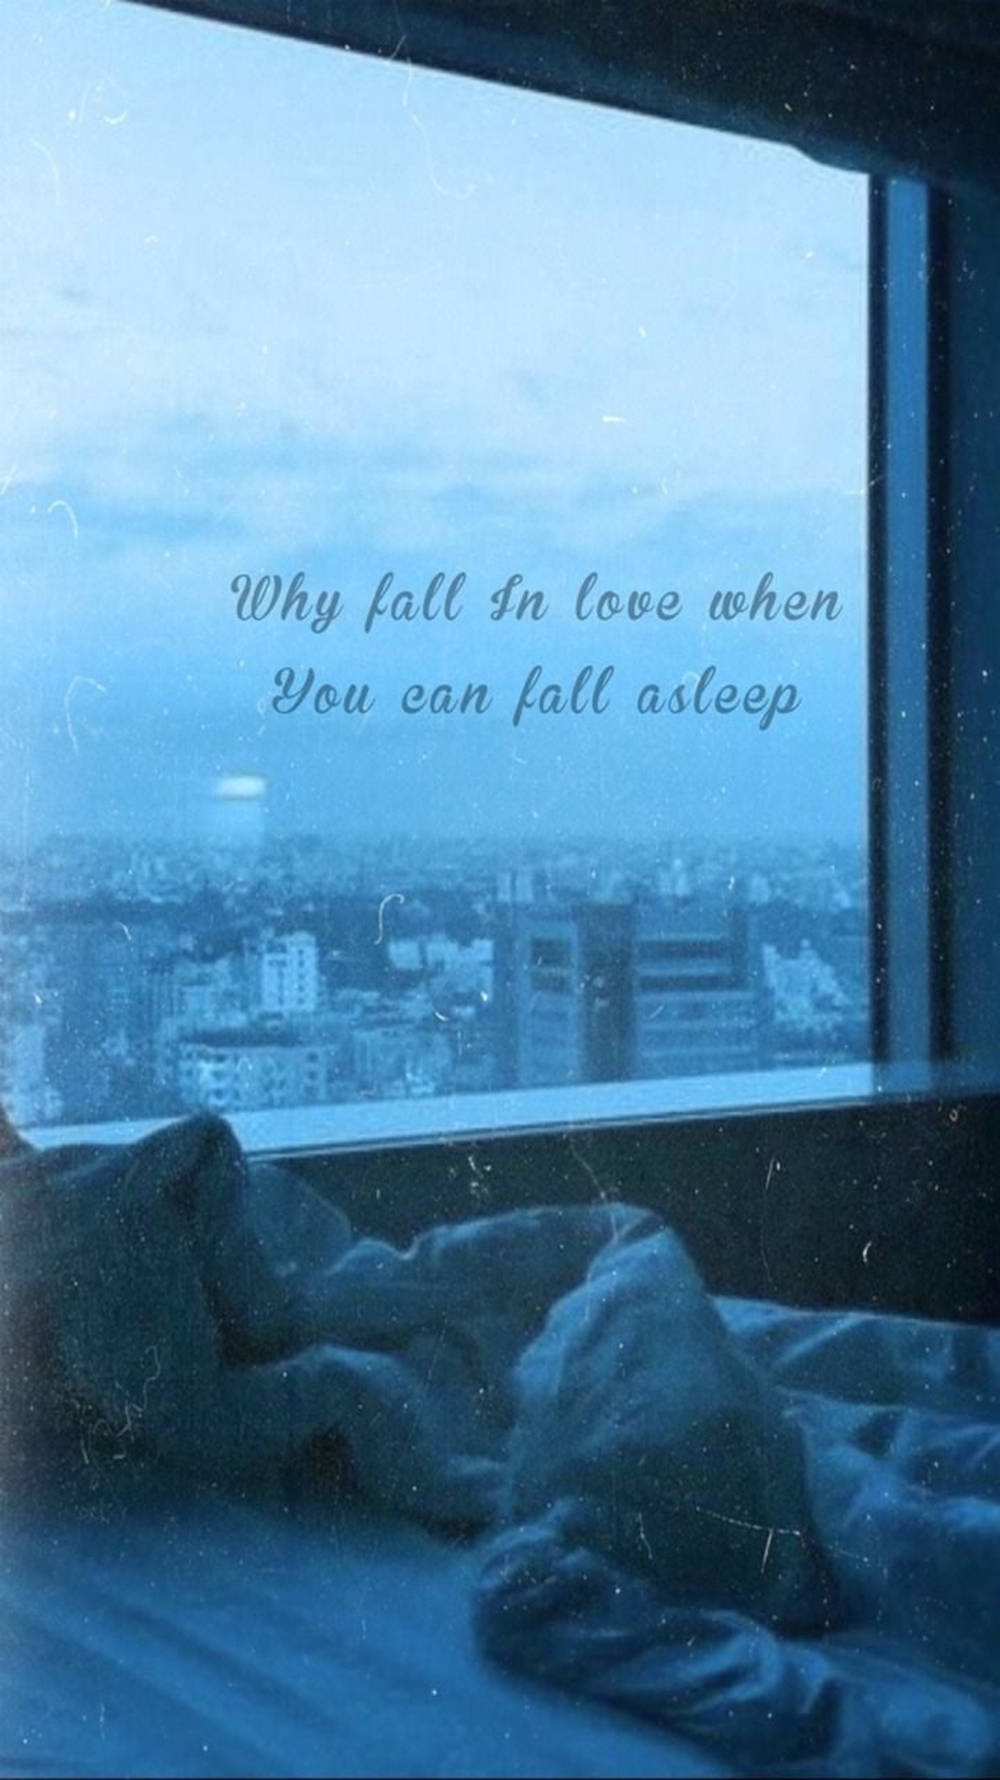 Hvorfor forelske sig når du kan falde i søvn? Wallpaper